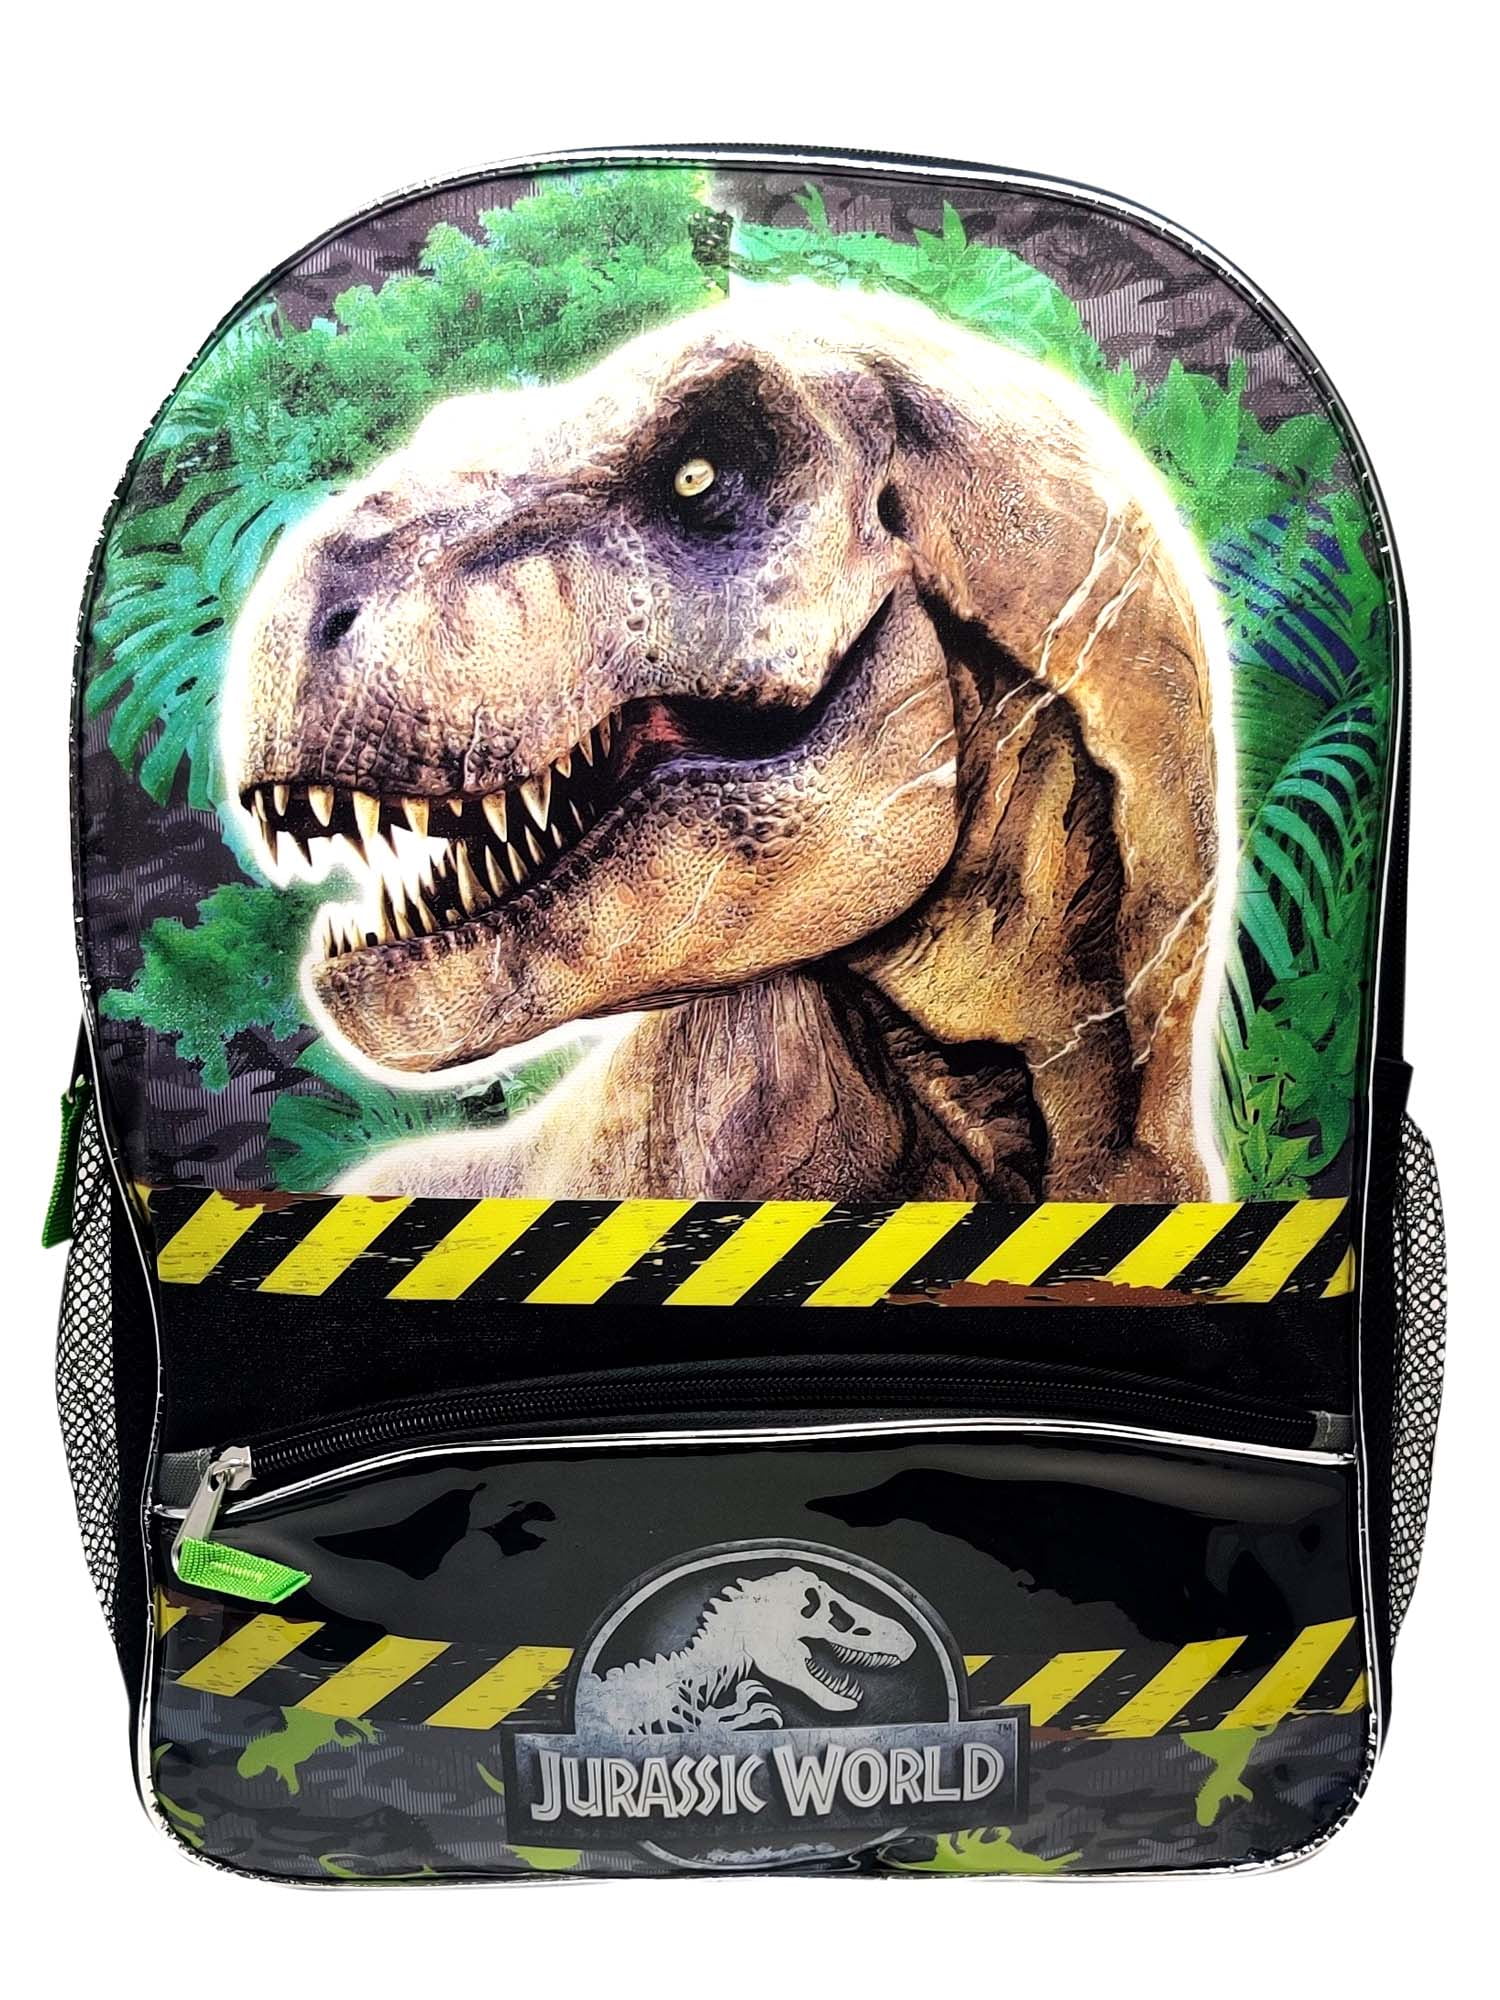 Tee Rex Dinosaur Backpack Daypack Rucksack Laptop Shoulder Bag with USB Charging Port 